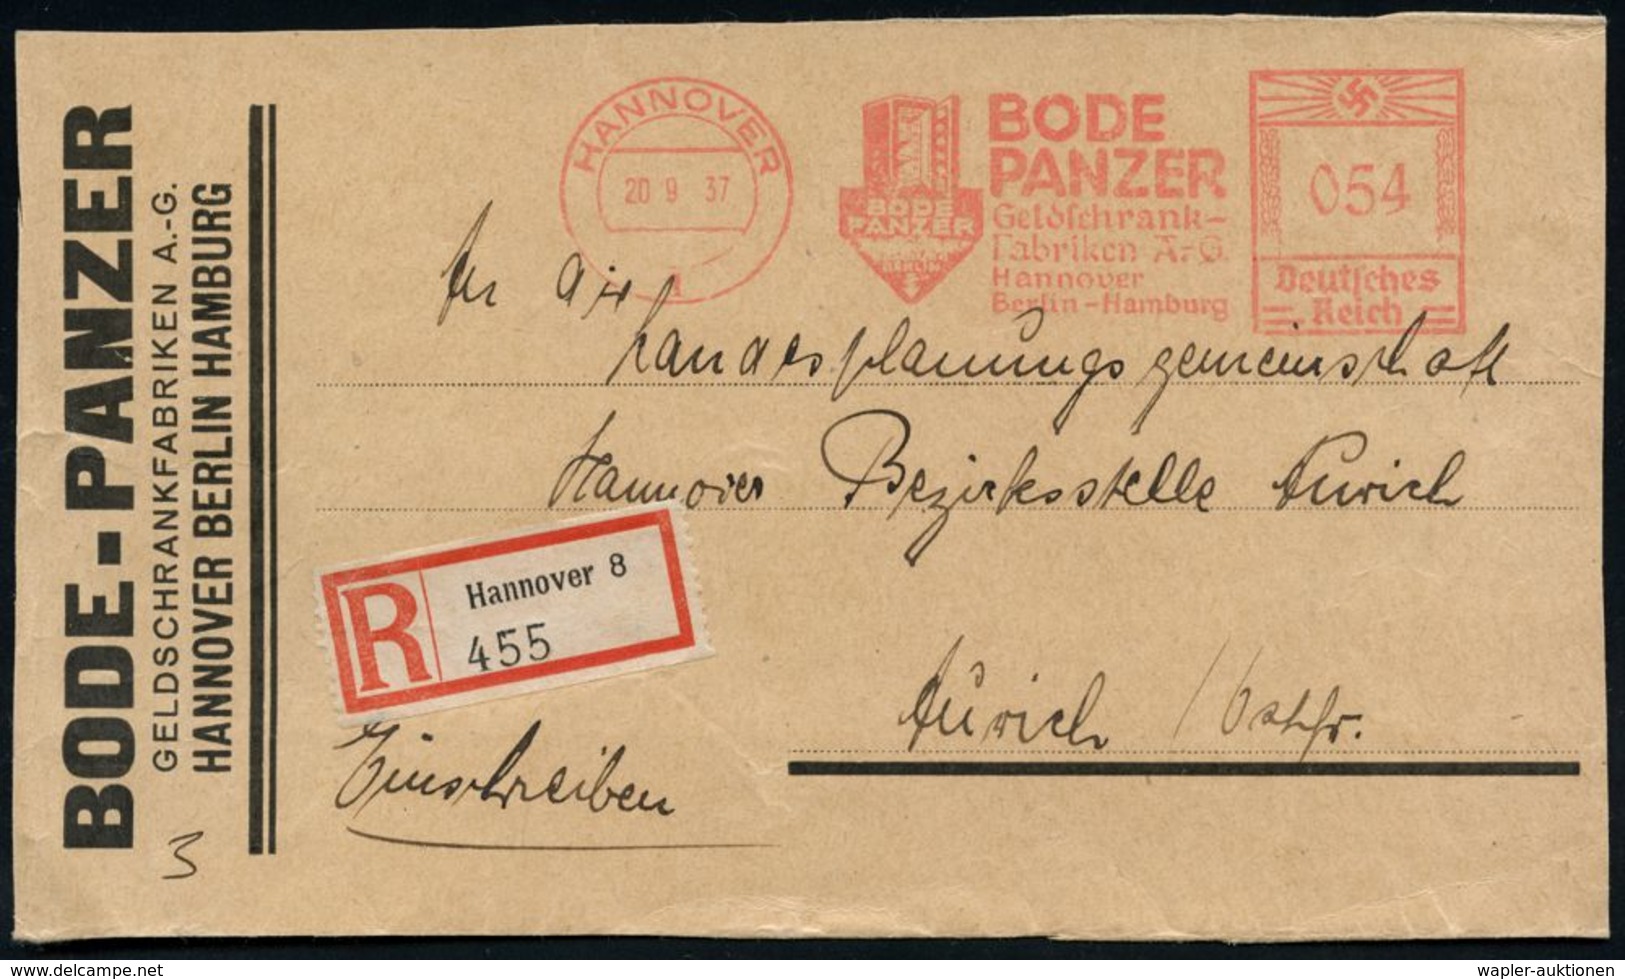 NUMISPHILATELIE / GELDSCHEINE / MÜNZEN : HANNOVER/ 1/ BODE/ PANZER/ Geldschrank-/ Fabriken AG.. 1937 (20.9.) AFS 054 Pf. - Ohne Zuordnung